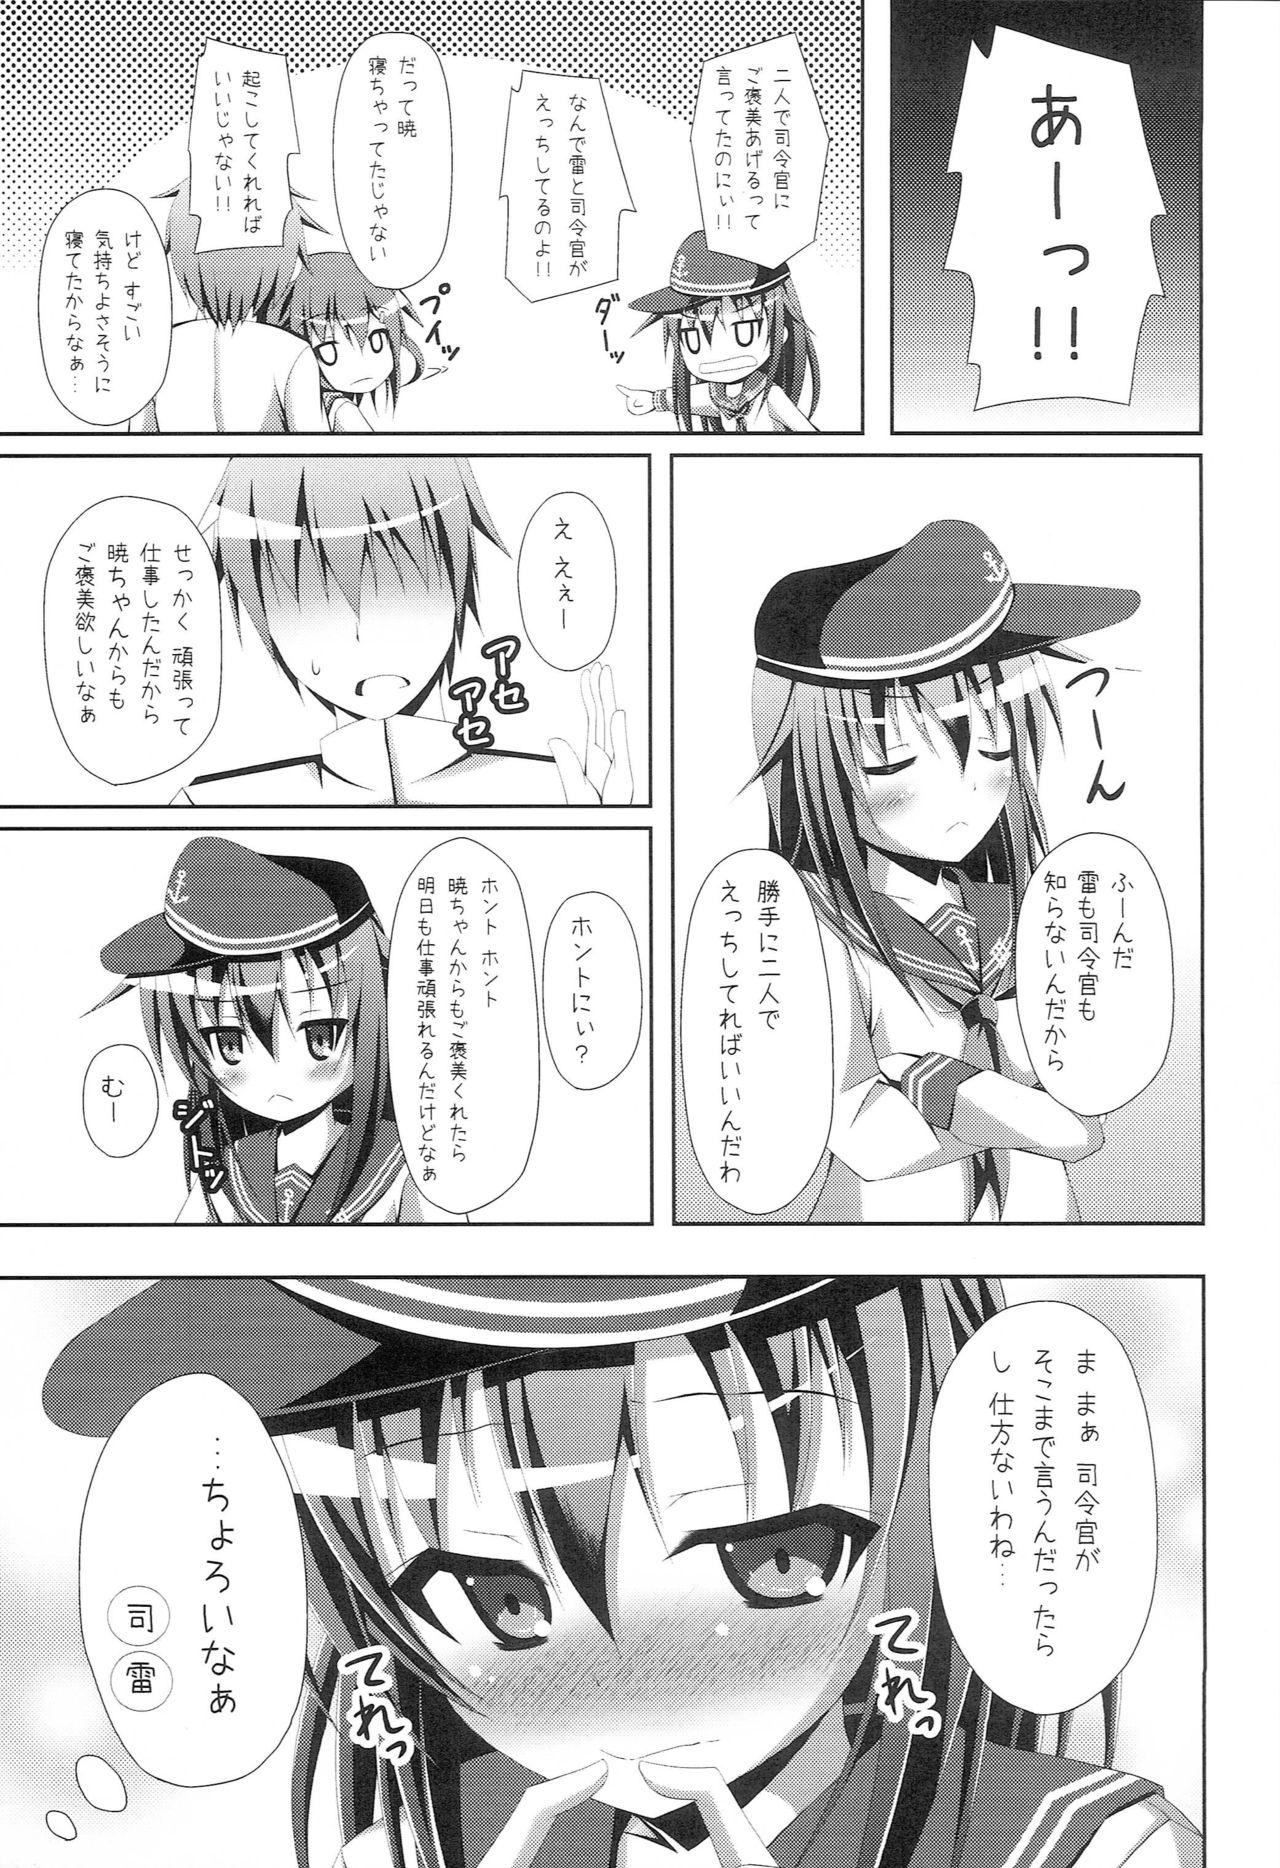 Booty "Shire-kan Ecchi Shiyo?" "Shireikan to Nara Watashi mo..." - Kantai collection Face - Page 12